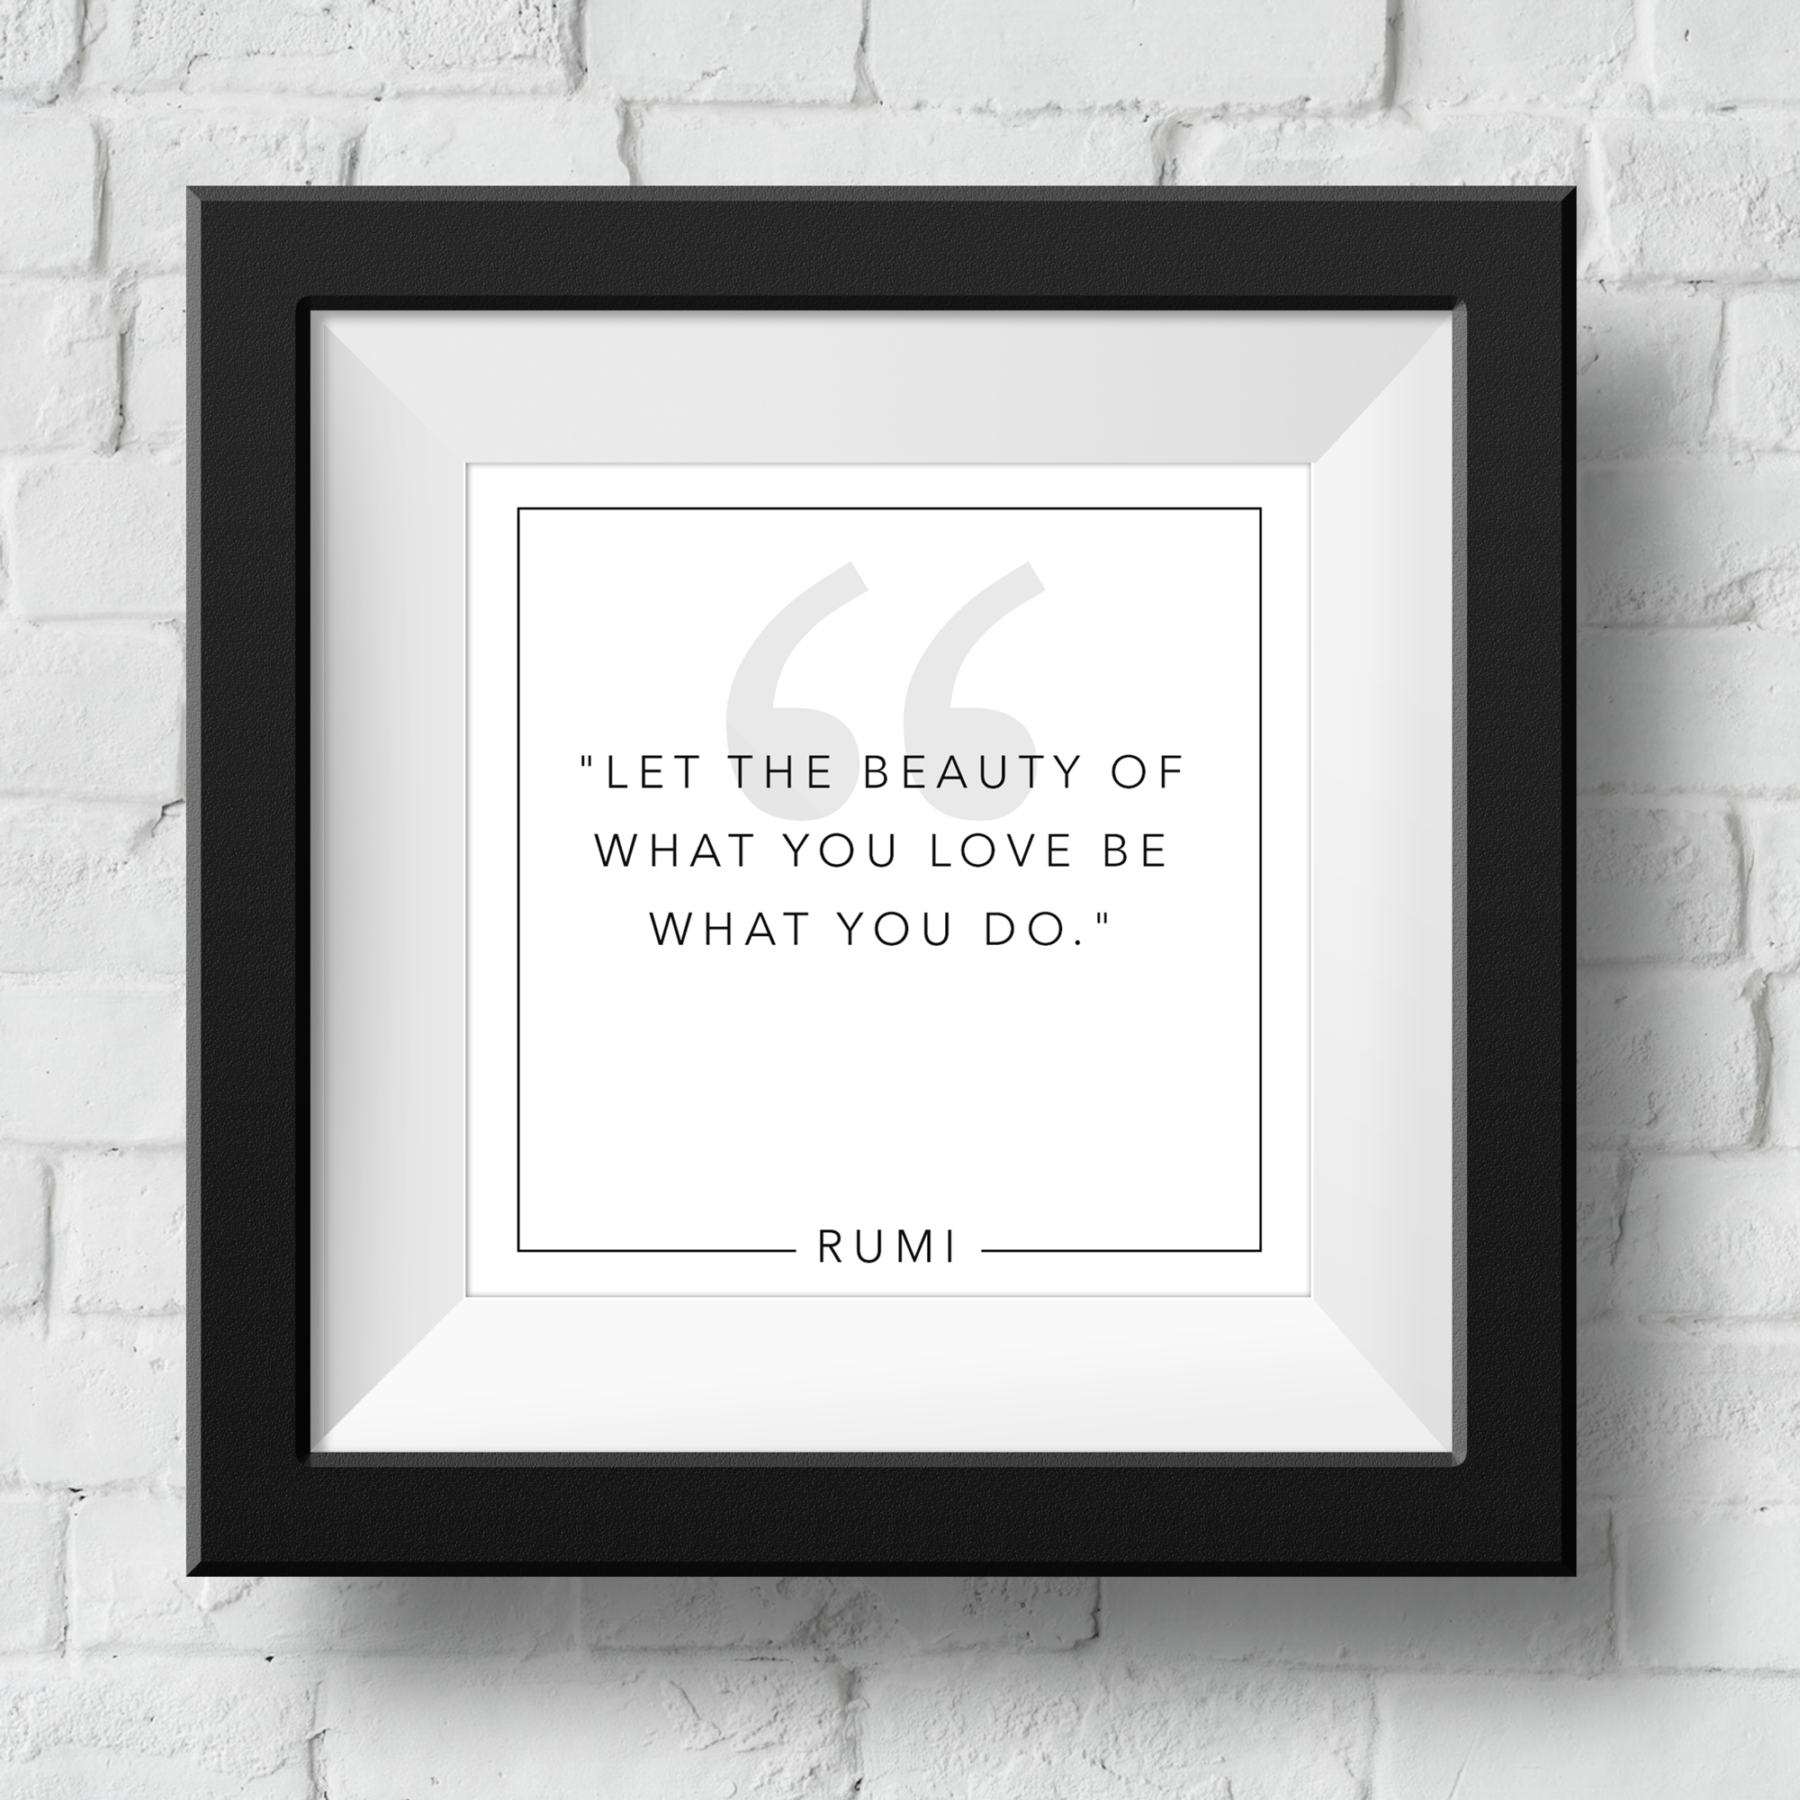 rumi-beauty-framed